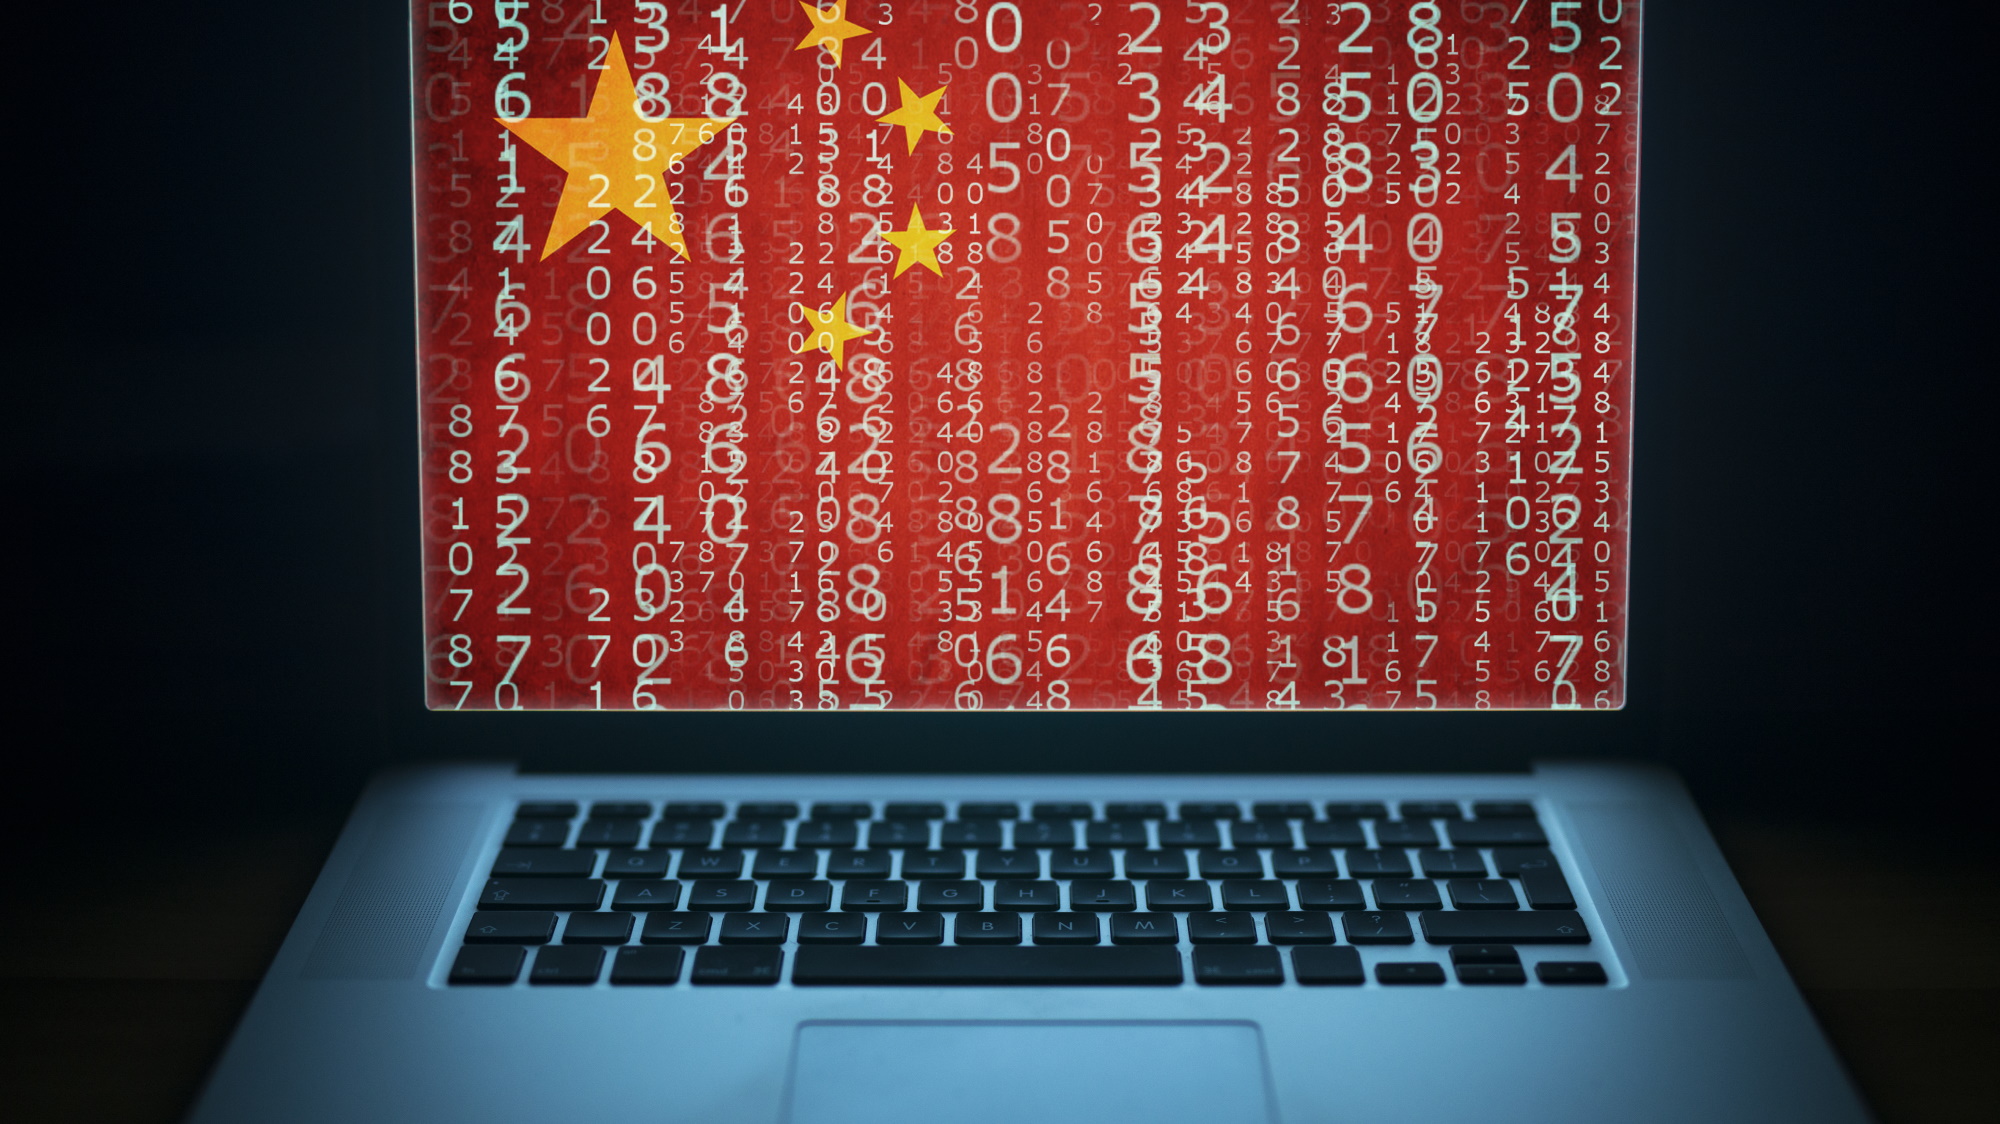 Китайские хакеры годами шпионили за телекоммуникационным трафиком США